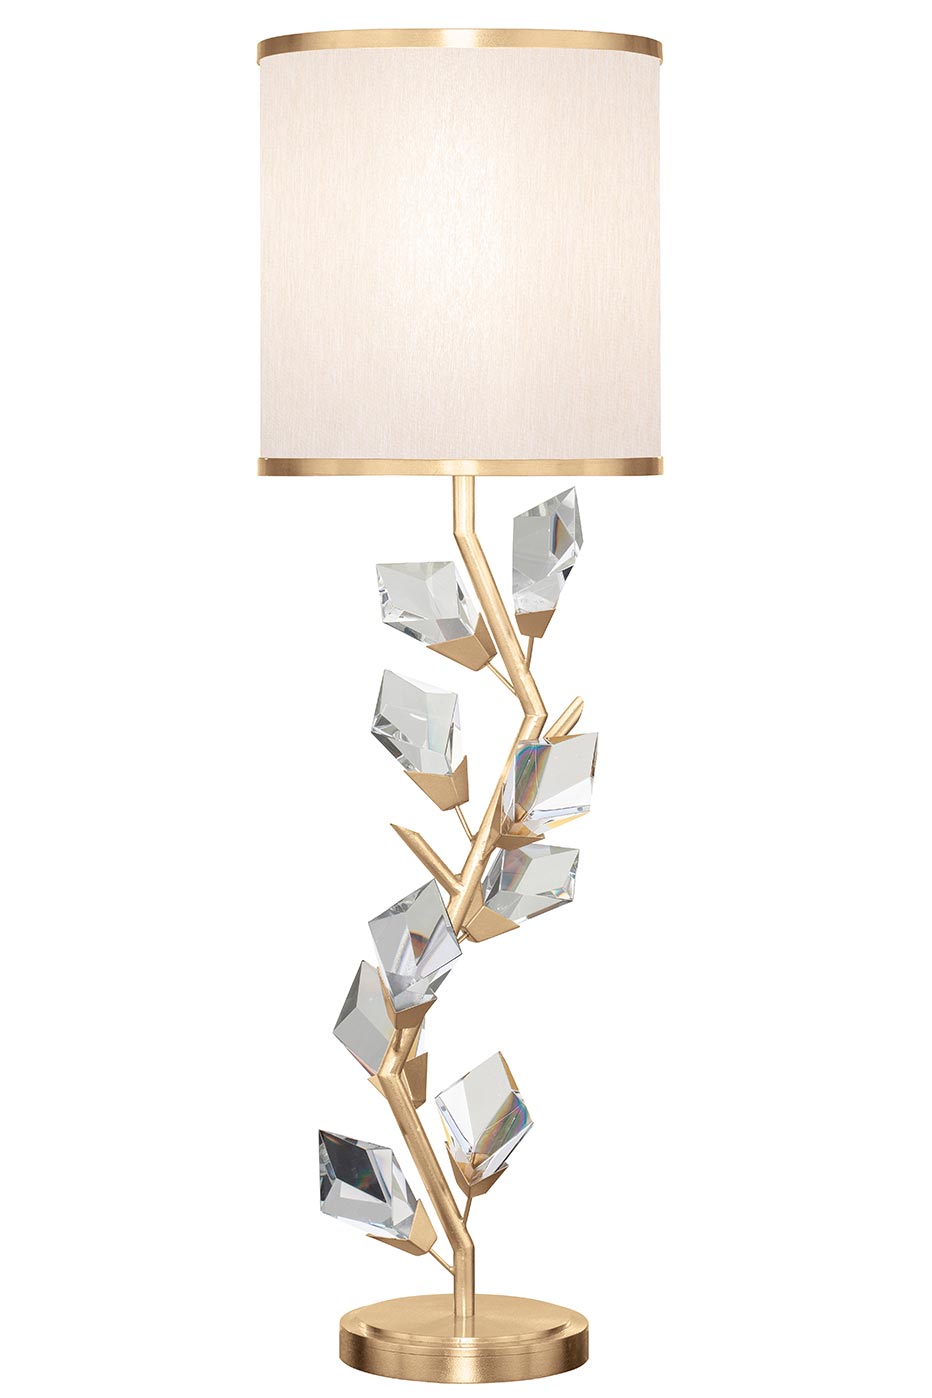 Fine Art Lamps Luxury Lighting Fixtures, Gold Metal Branch Table Lamp